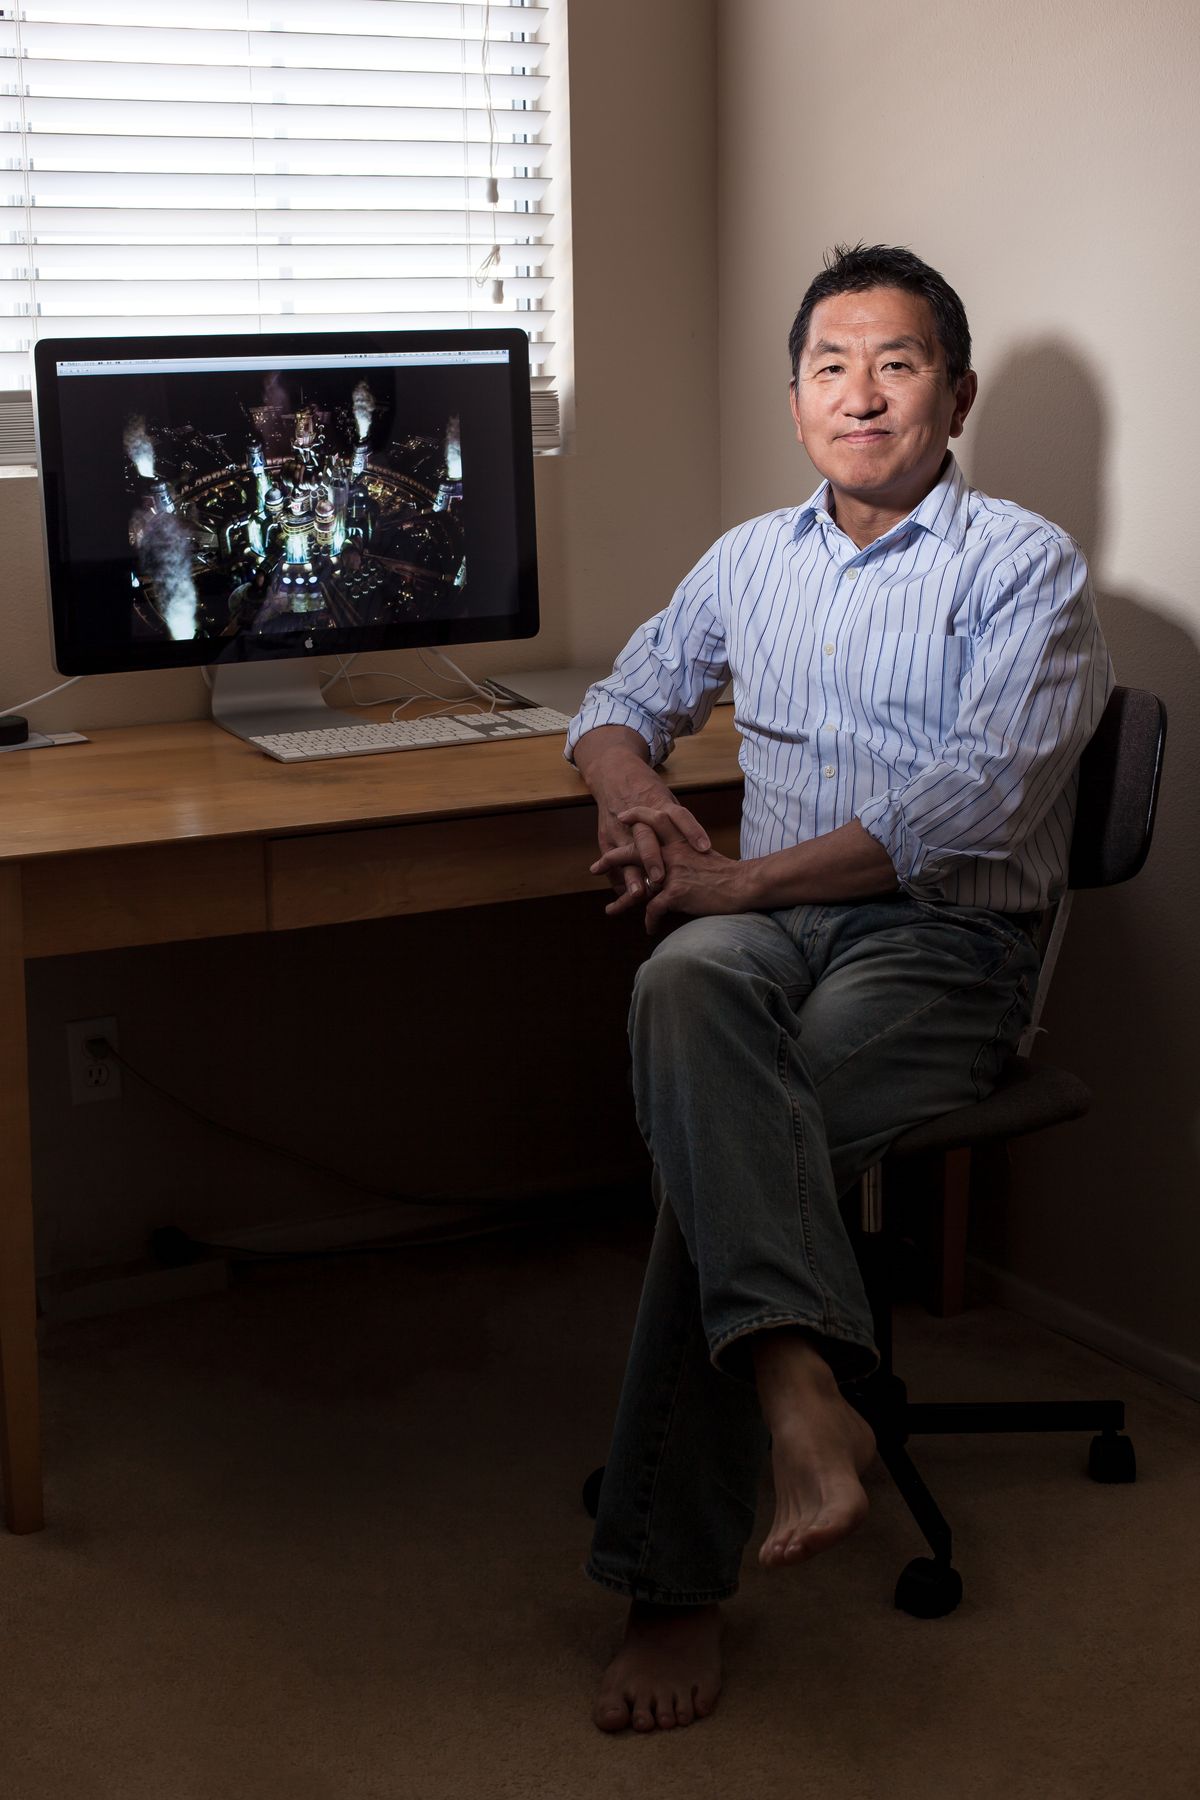 Final Fantasy 7 - В начале 90-х годов Ёсихиро Маруяма работал на известного японского гуру в области управления по имени Кен Омае